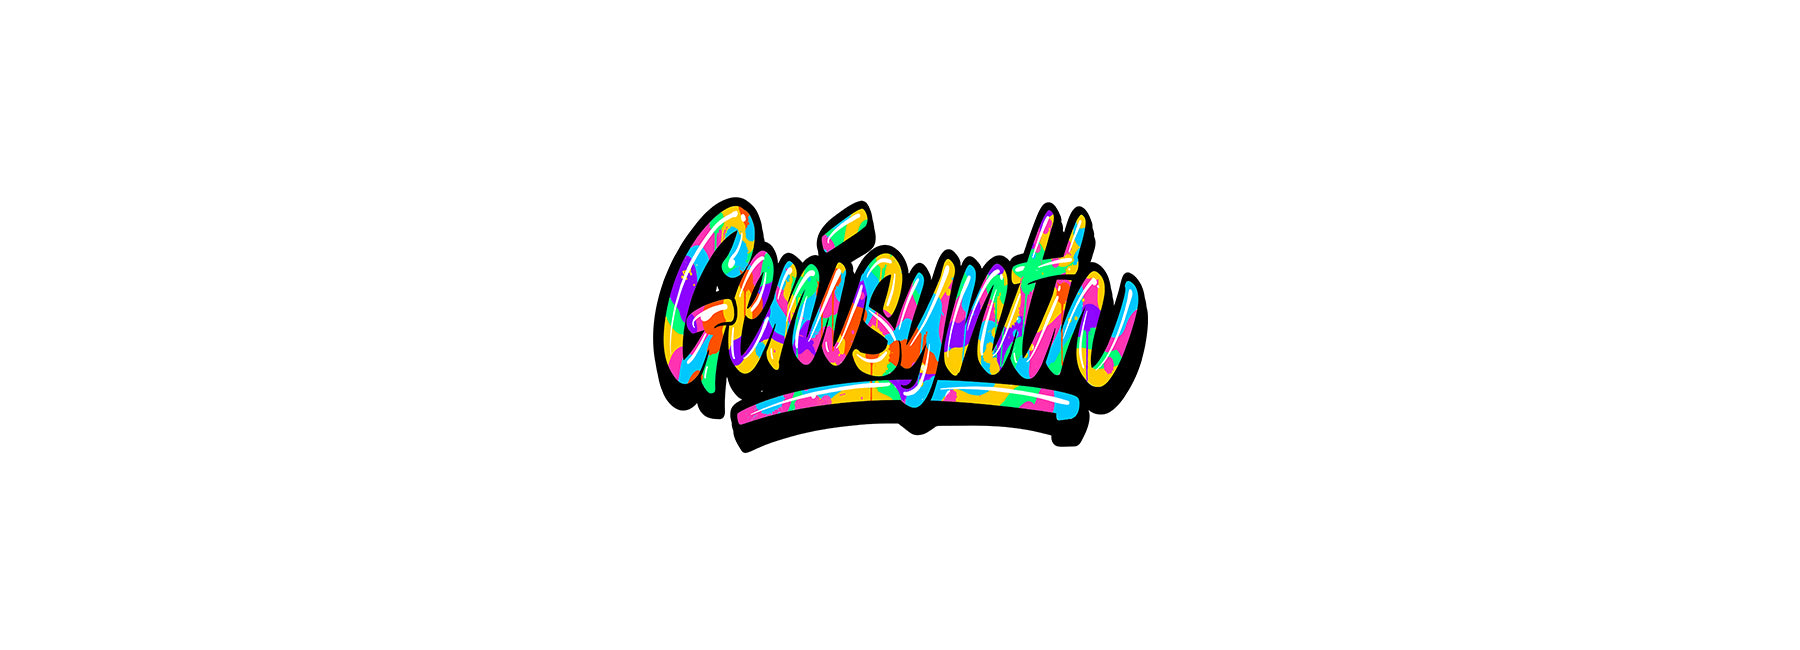 Genisynth Logo